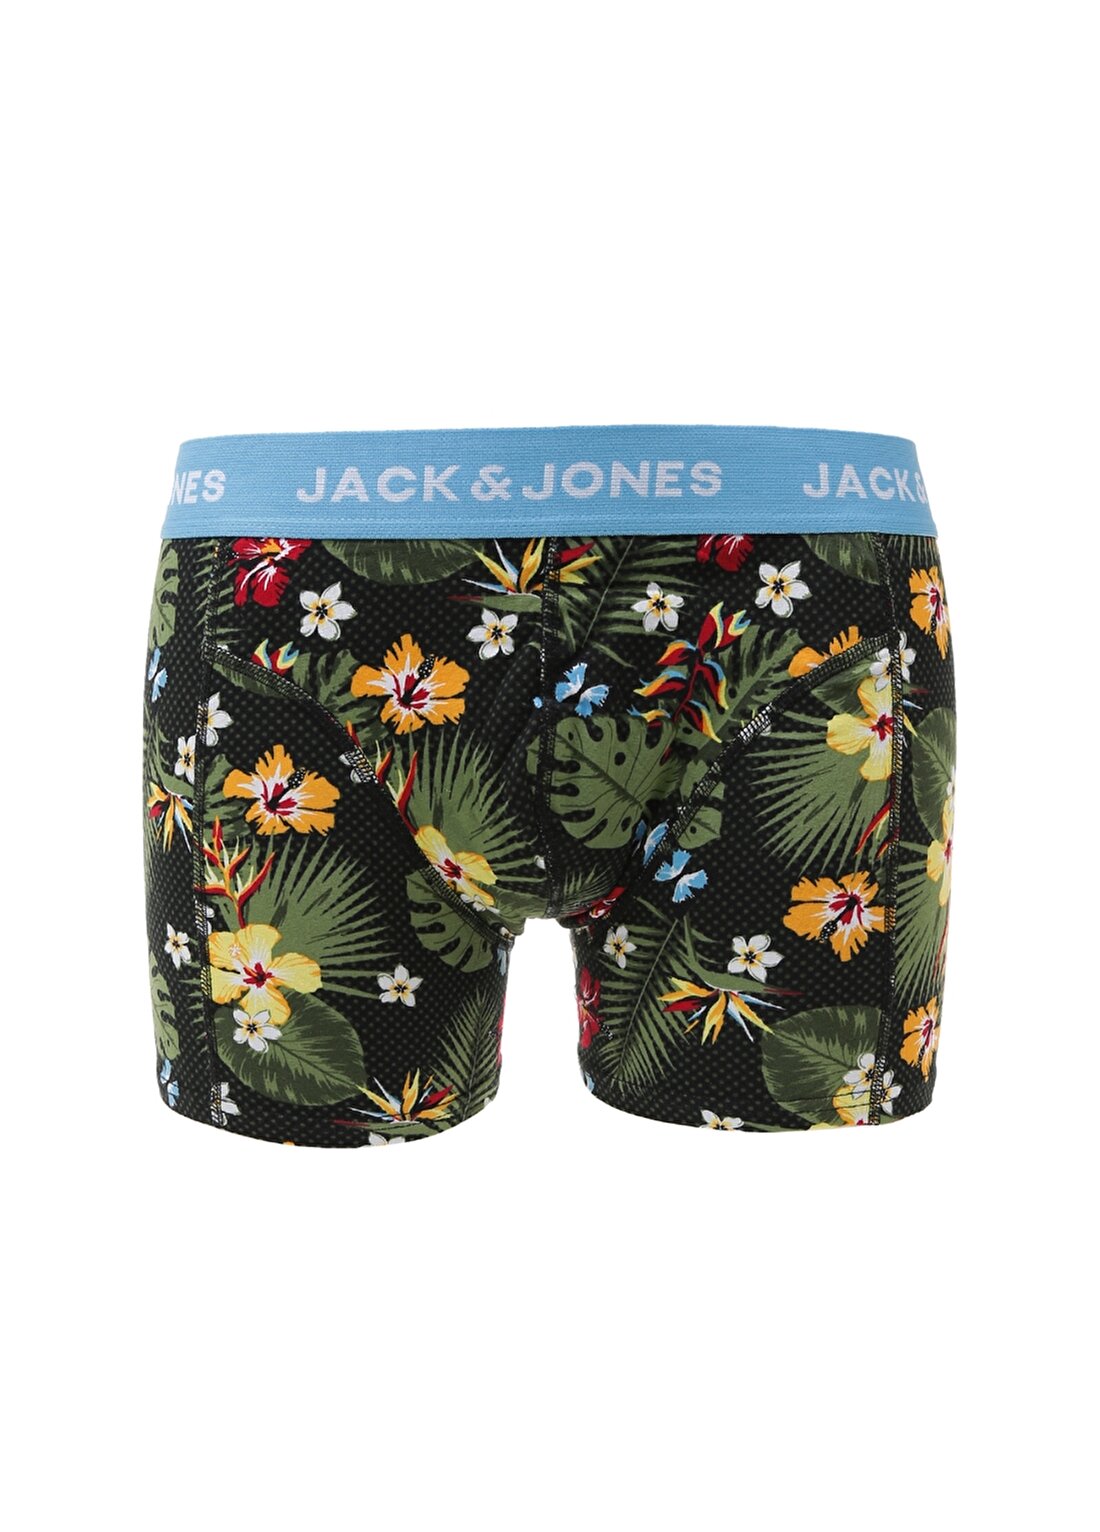 Jack & Jones Summer Flower Boxer